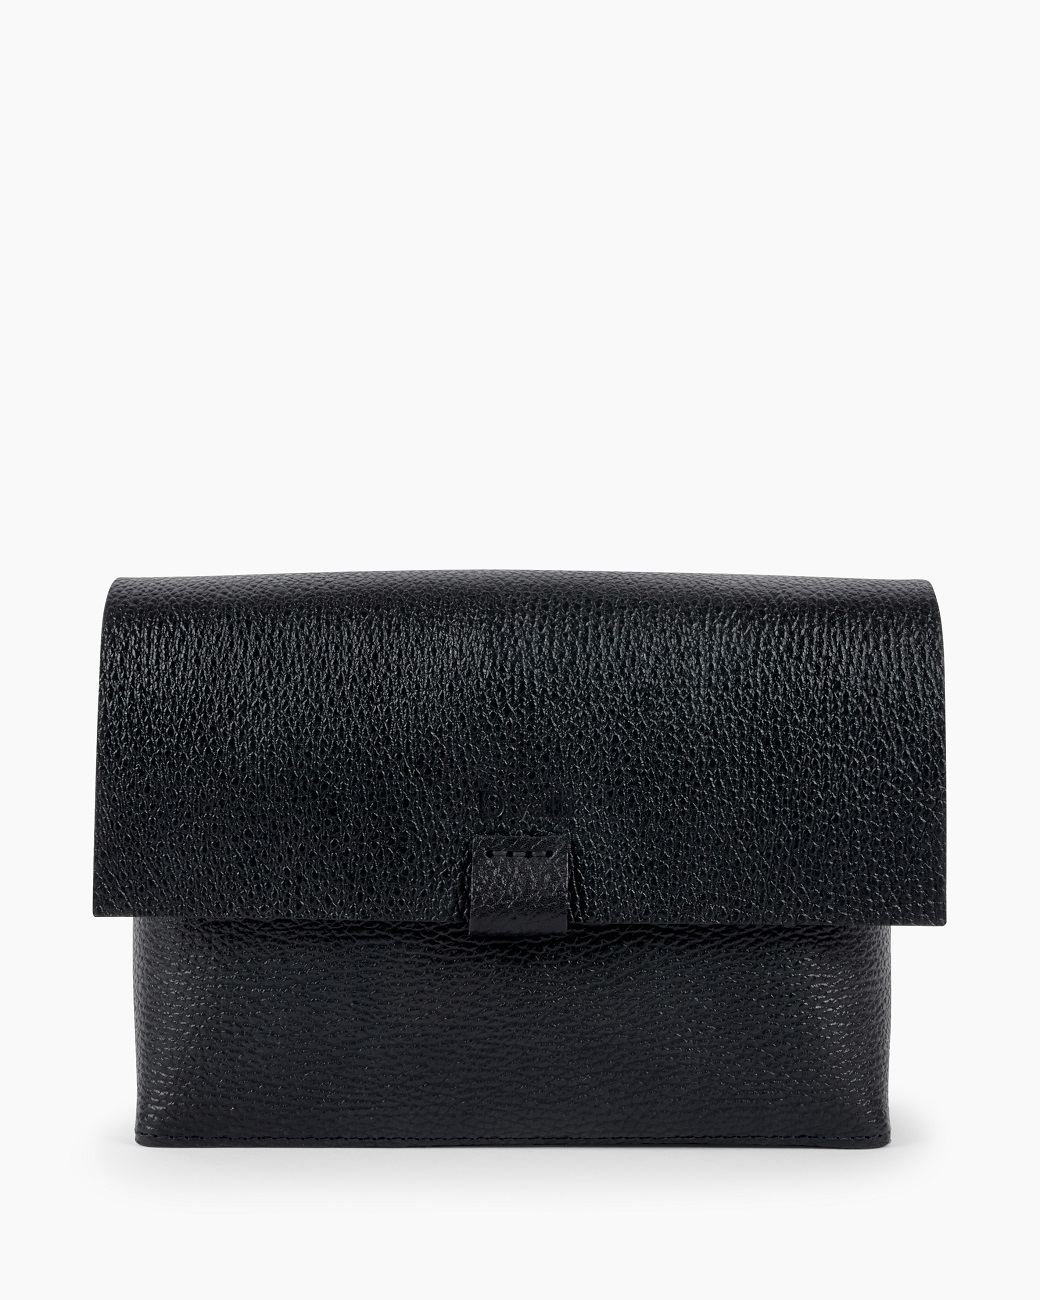 Женская сумка через плечо из натуральной кожи черная A005 black grain